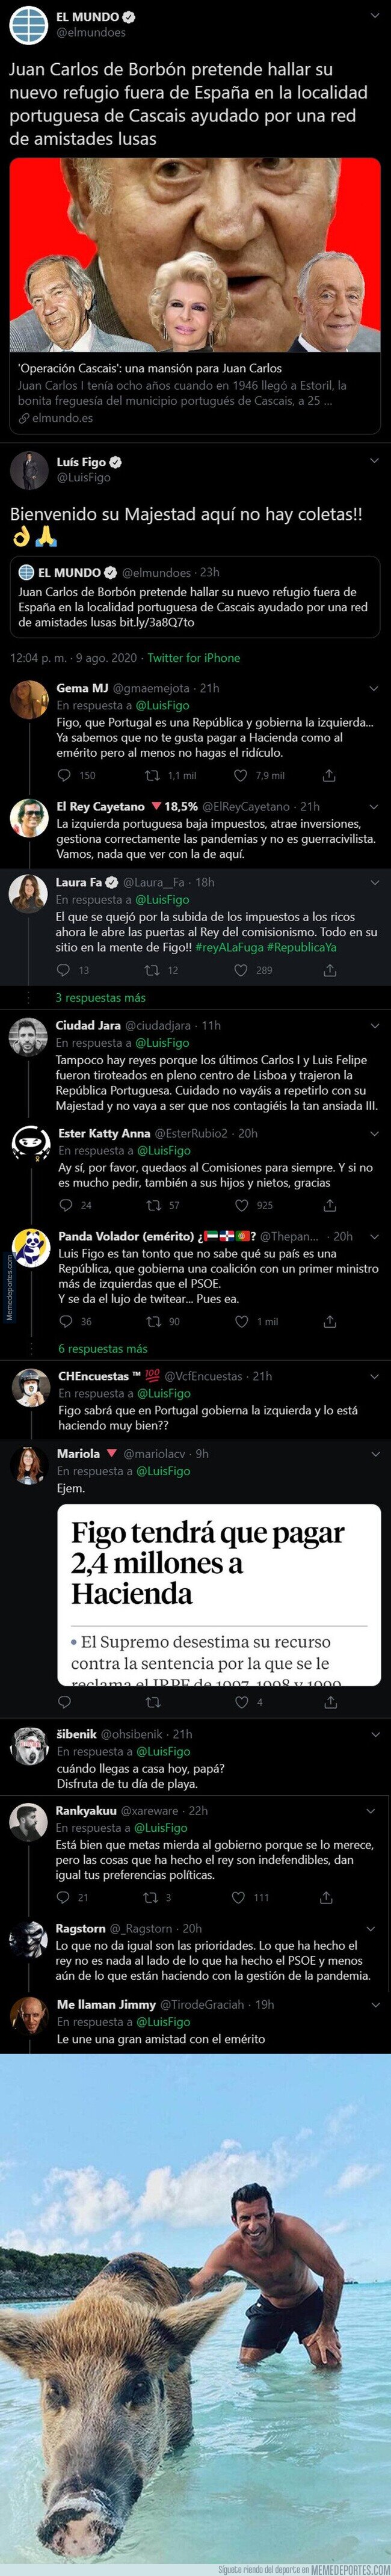 1111820 - Luis Figo defiende al fugado Juan Carlos y ataca a Pablo Iglesias y todo Twitter se une contra él con estas respuestas